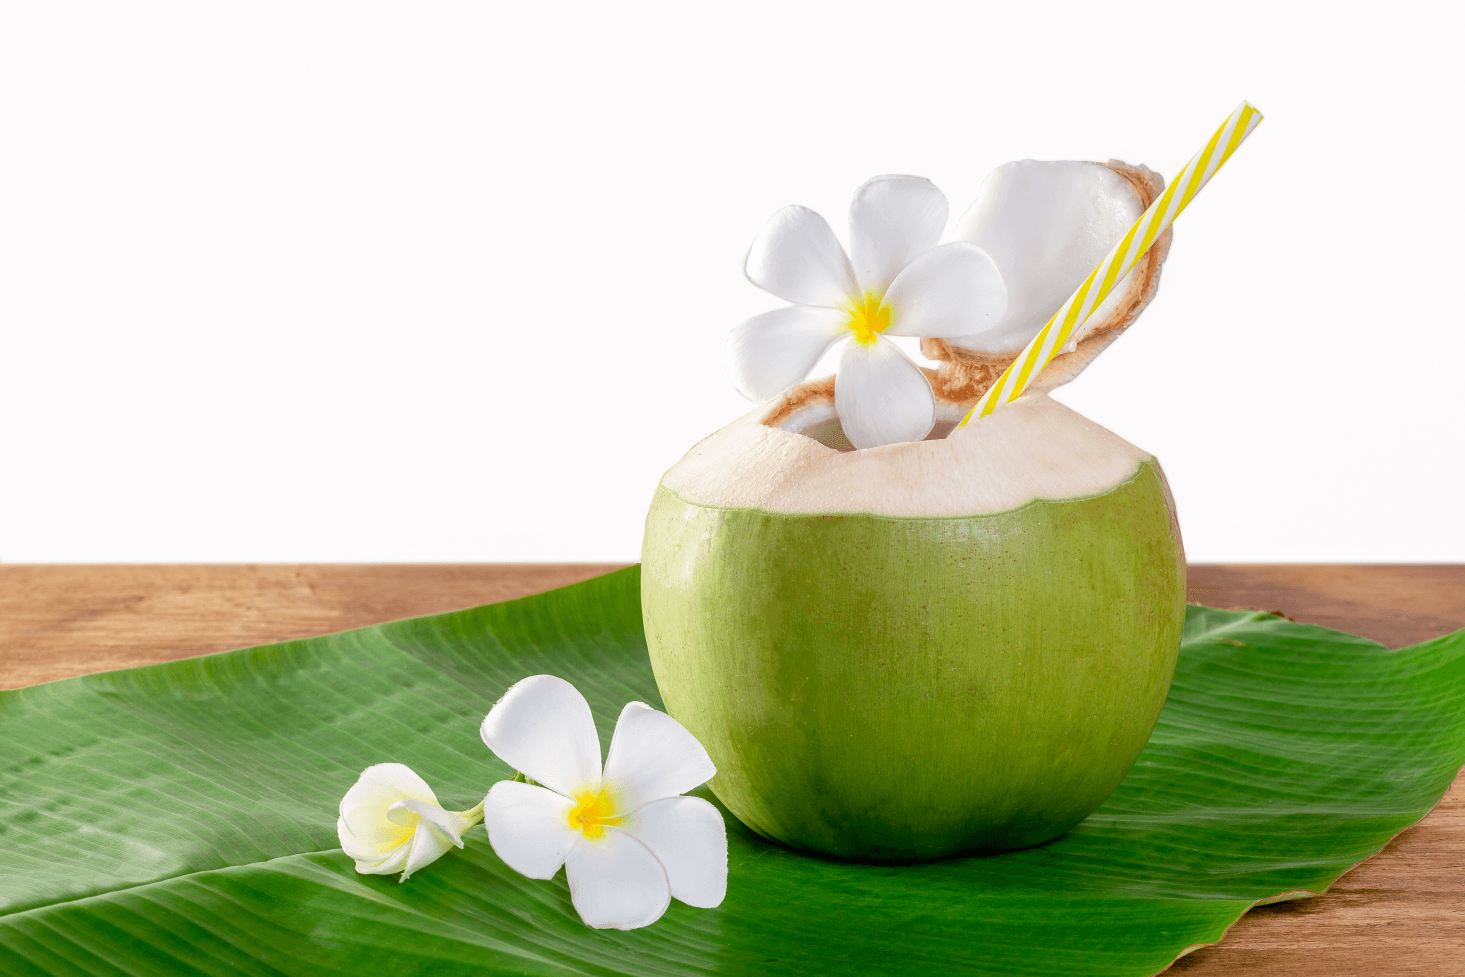 नारियल पानी के 12 स्वास्थ्य लाभ और पोषण संबंधी तथ्य